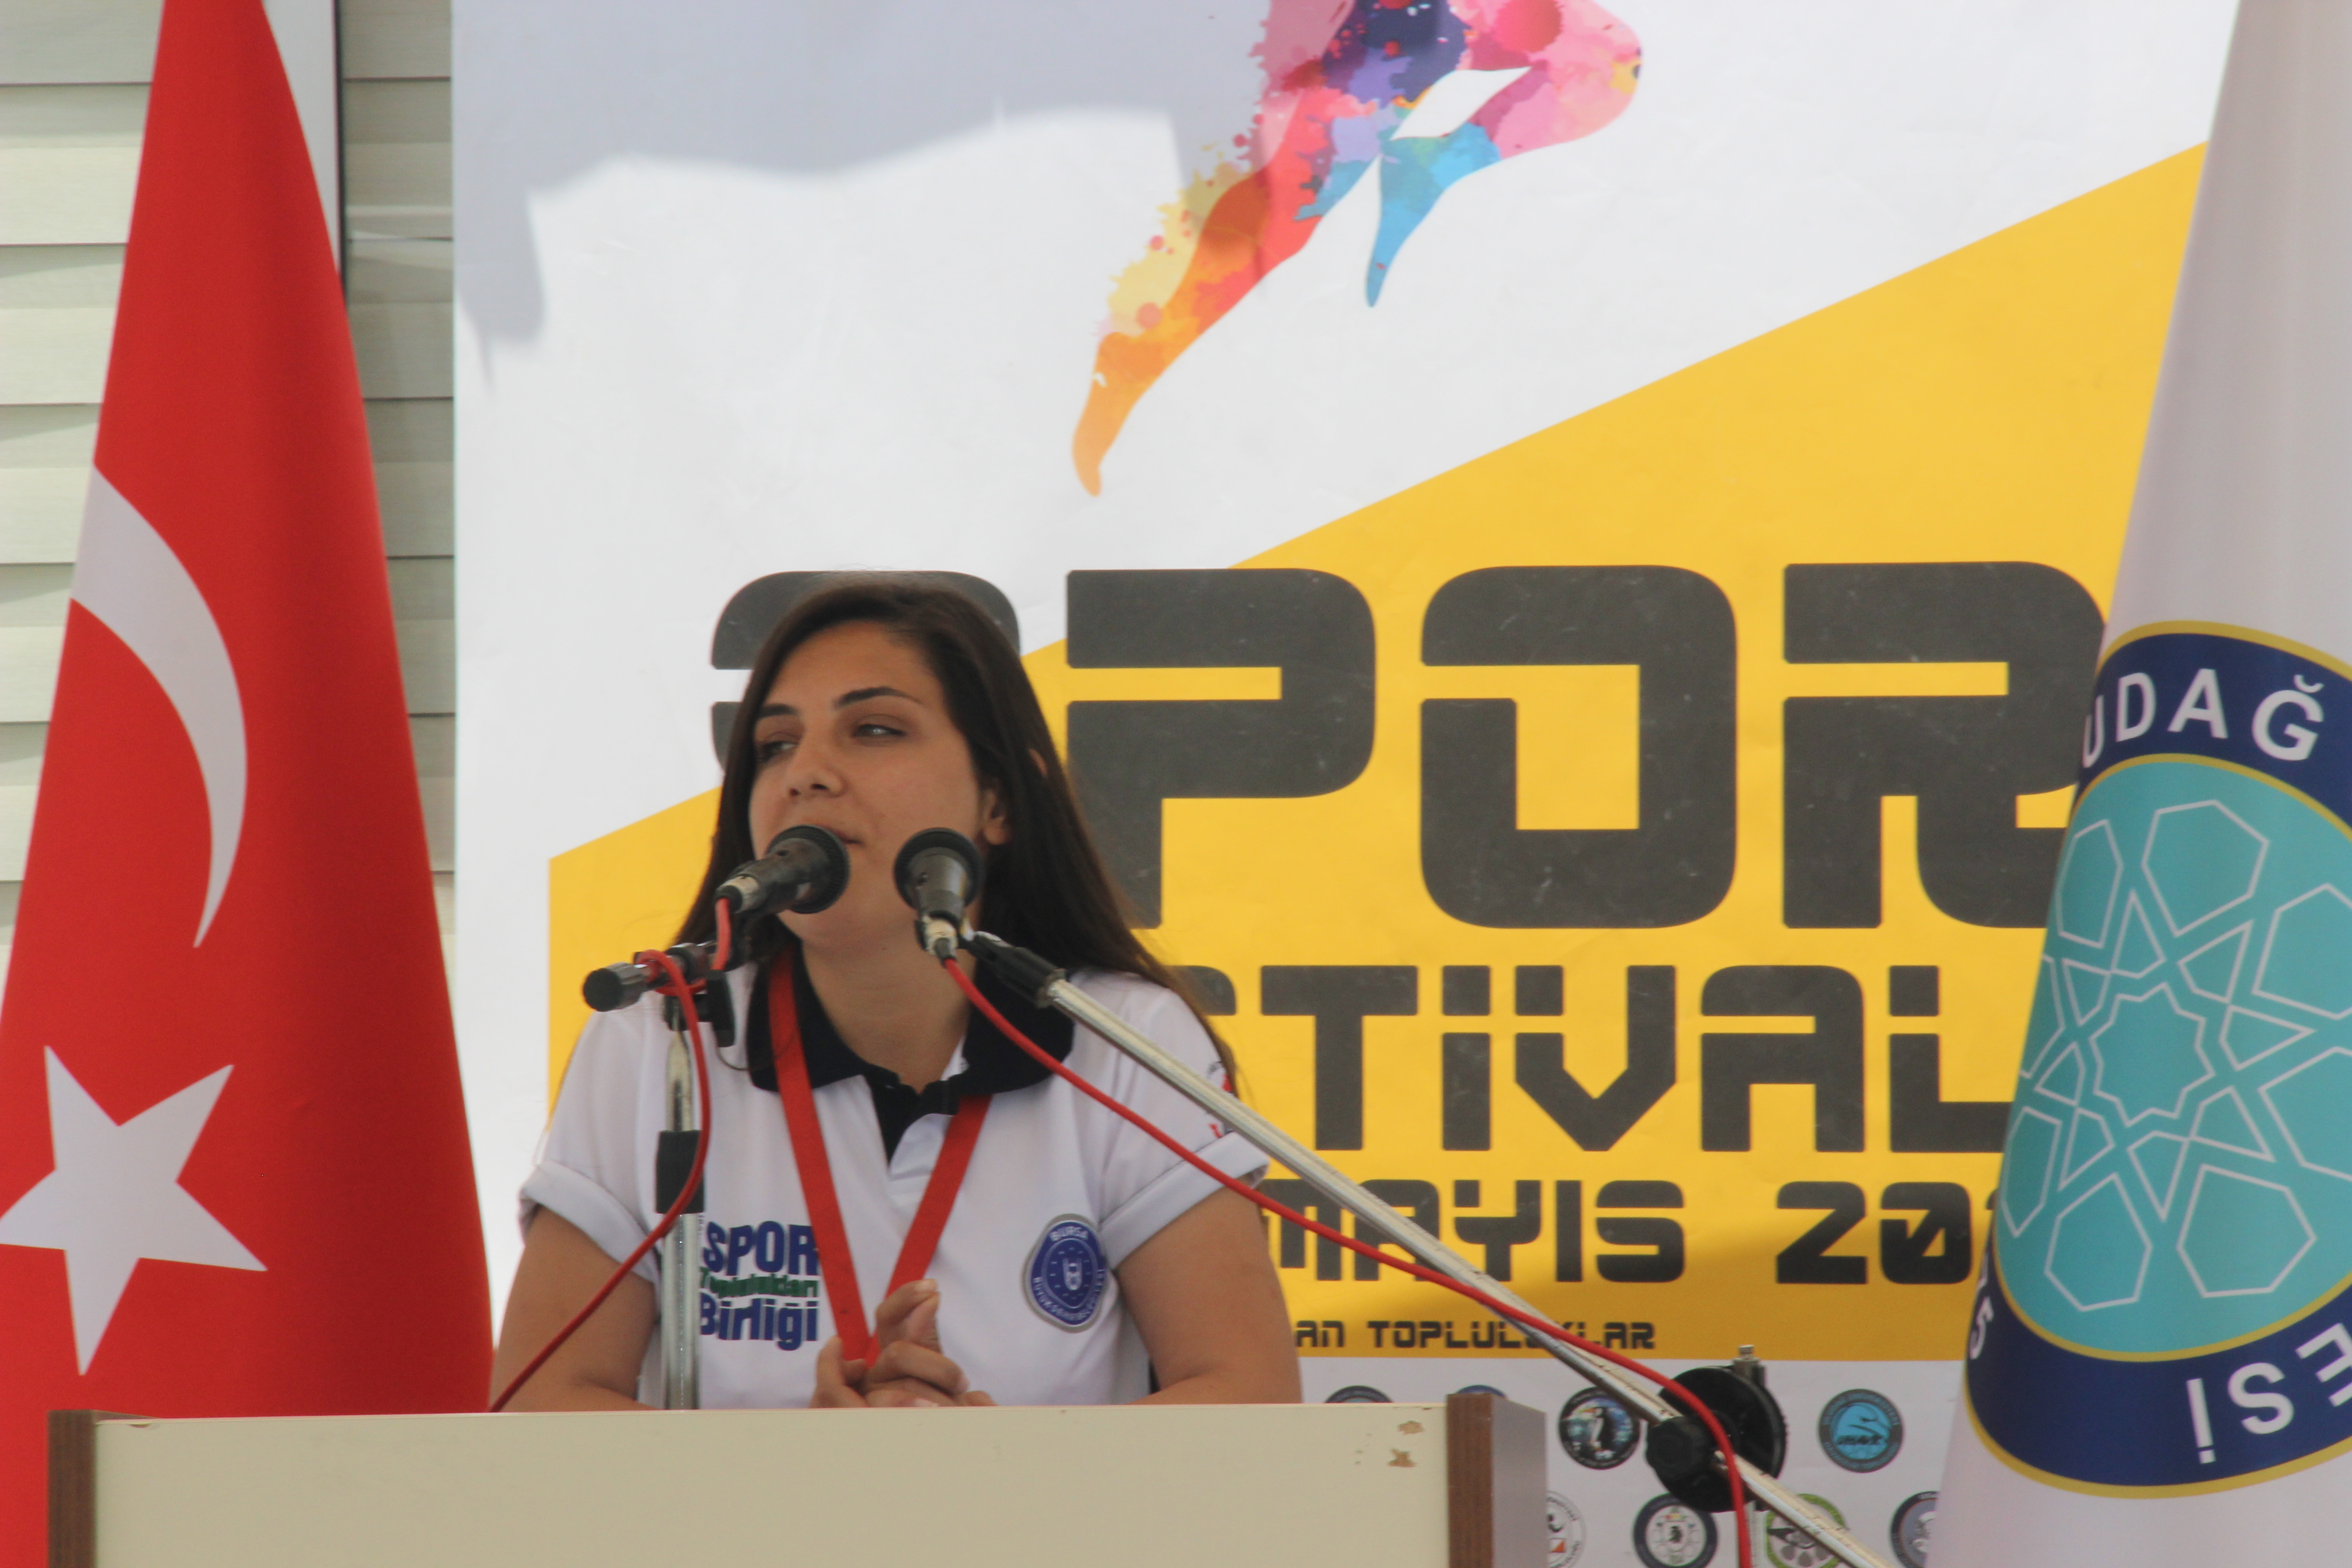  Uludağ Üniversitesi Spor Toplulukları Spor Festivali Başladı 